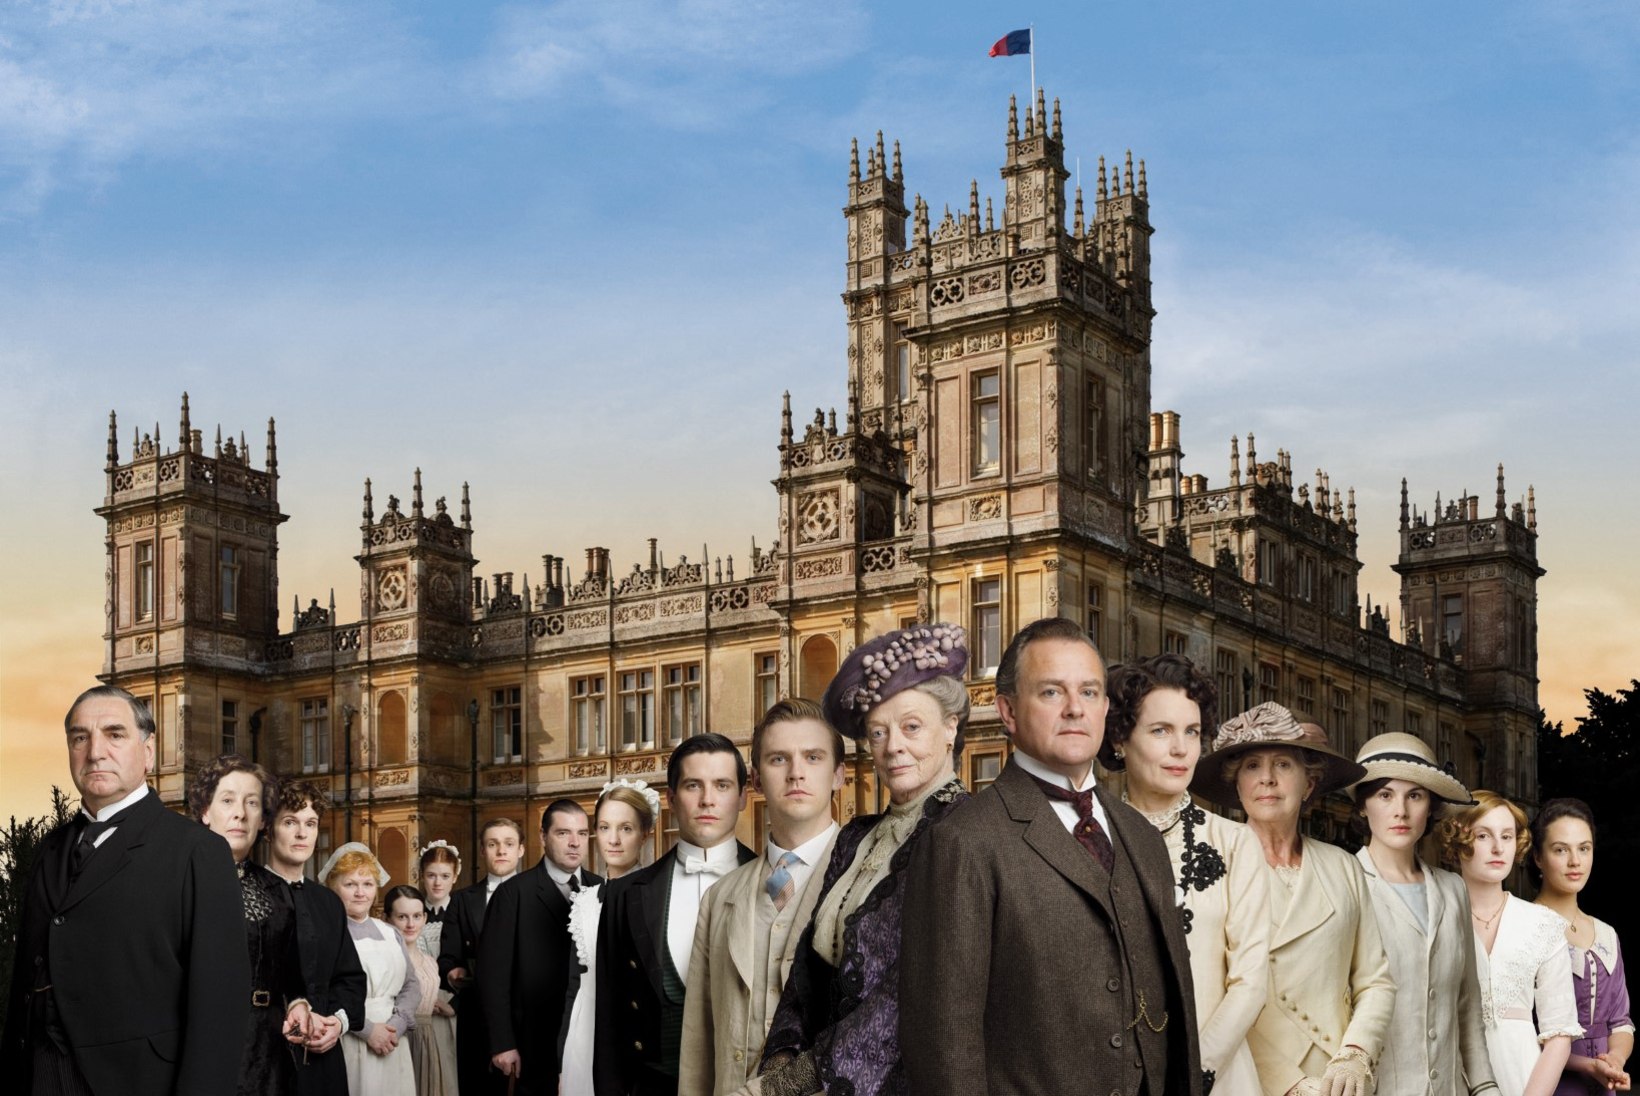 ETV hakkab näitama auhinnatud sarja "Downton Abbey"